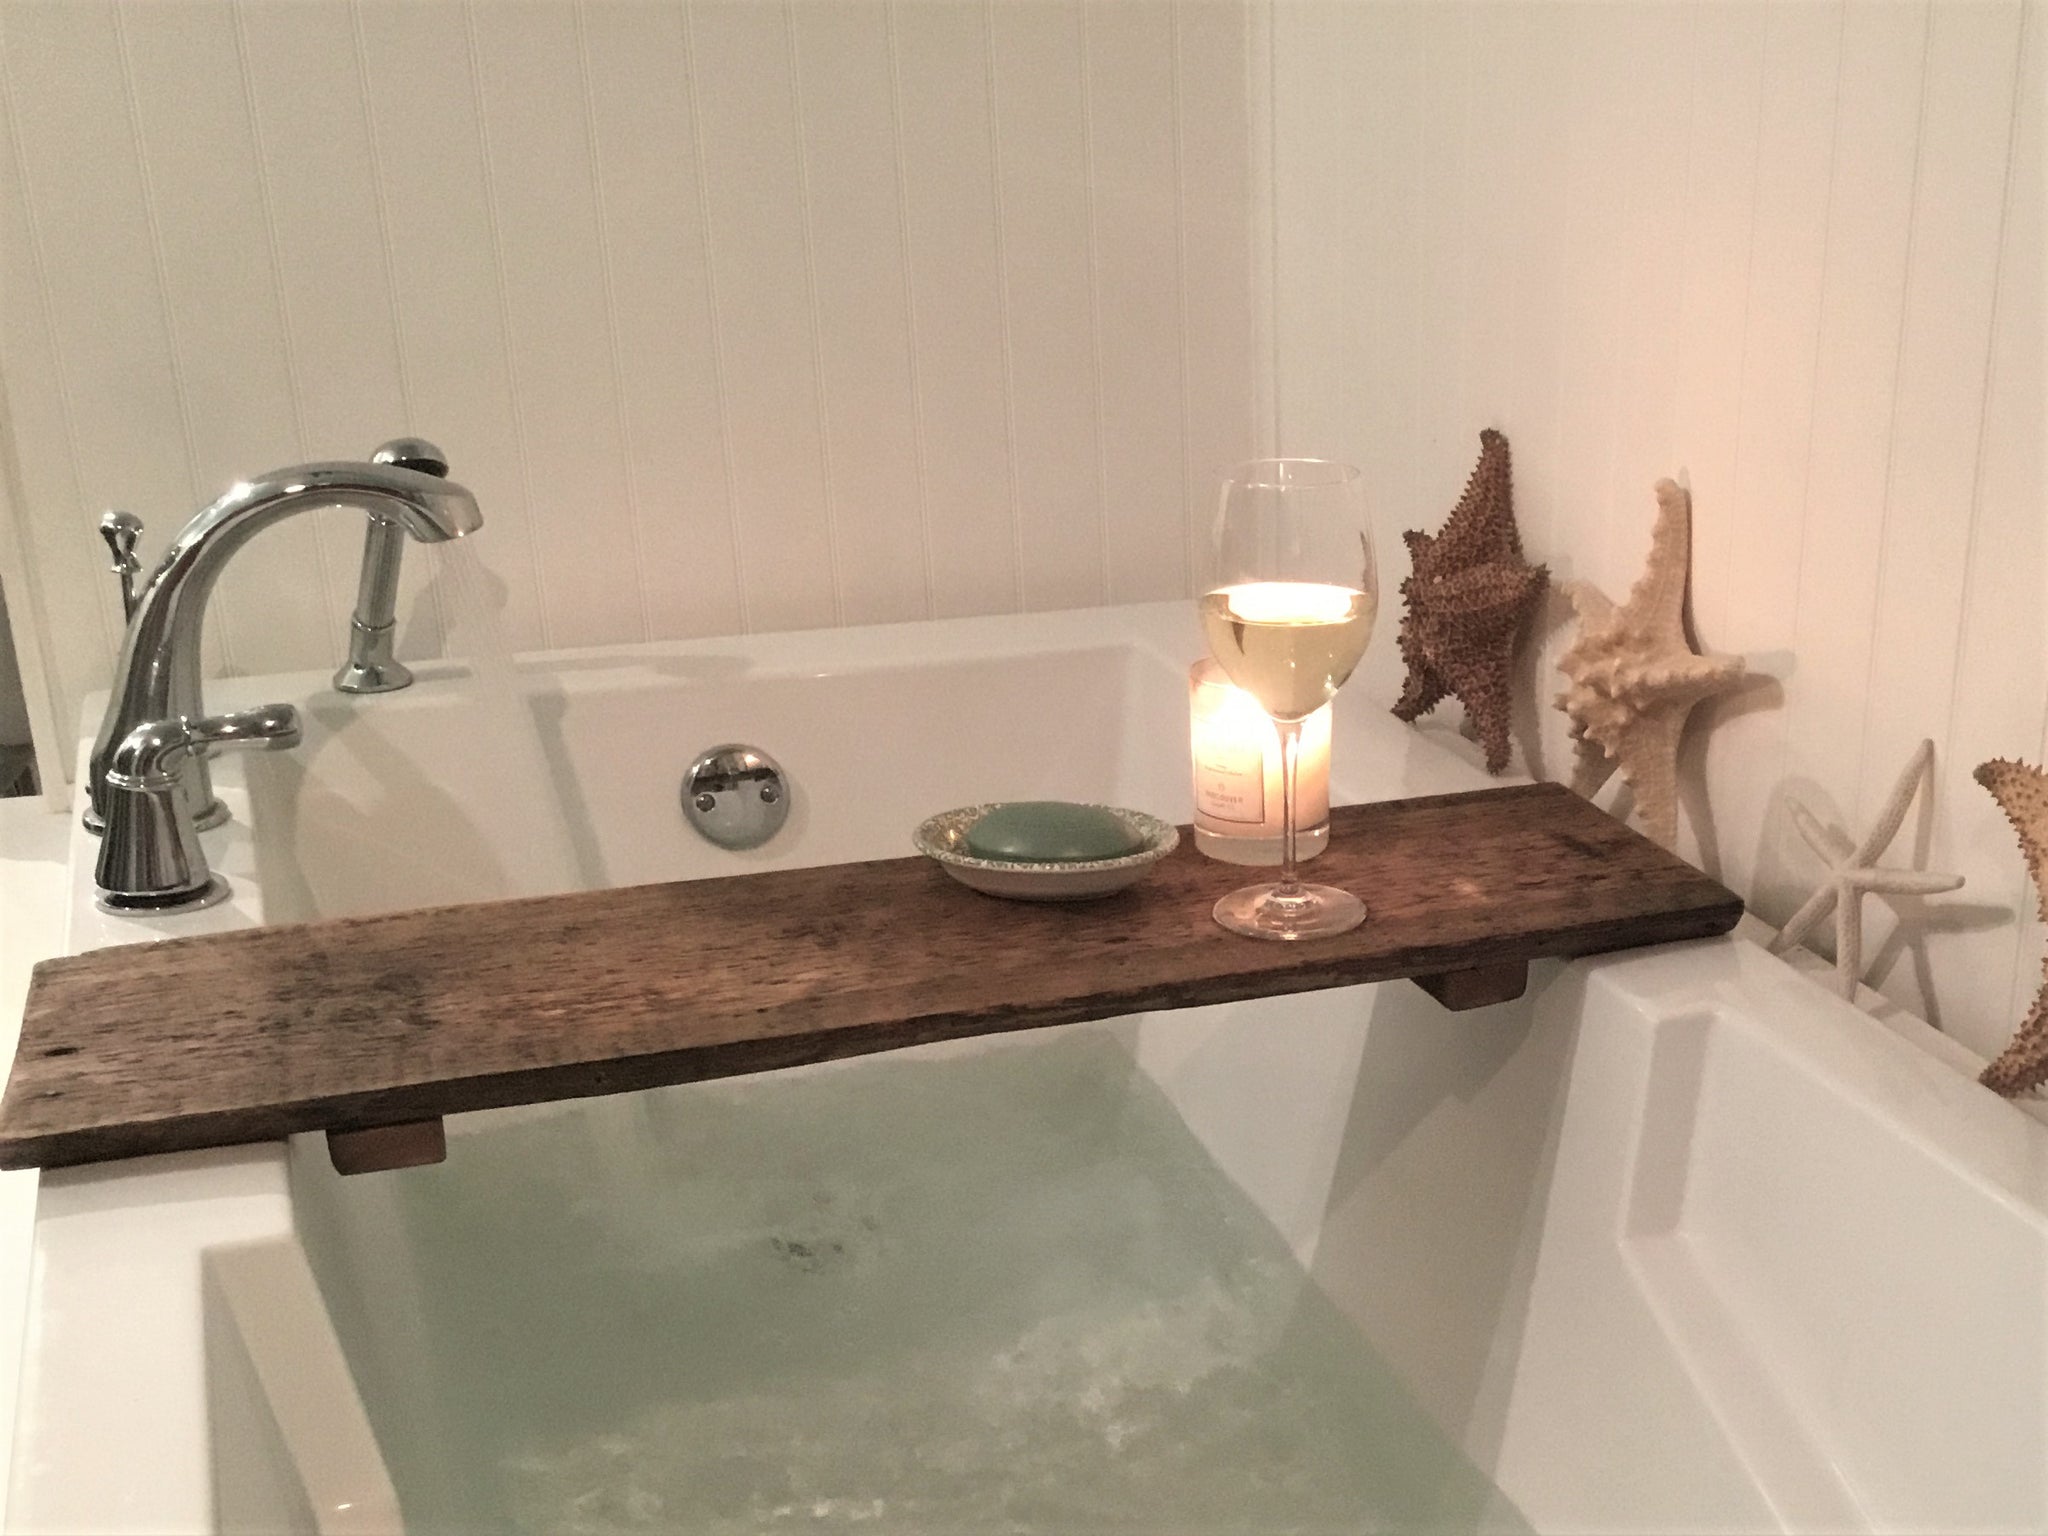 Rustic Wood Bath Tray, Bathtub Caddy